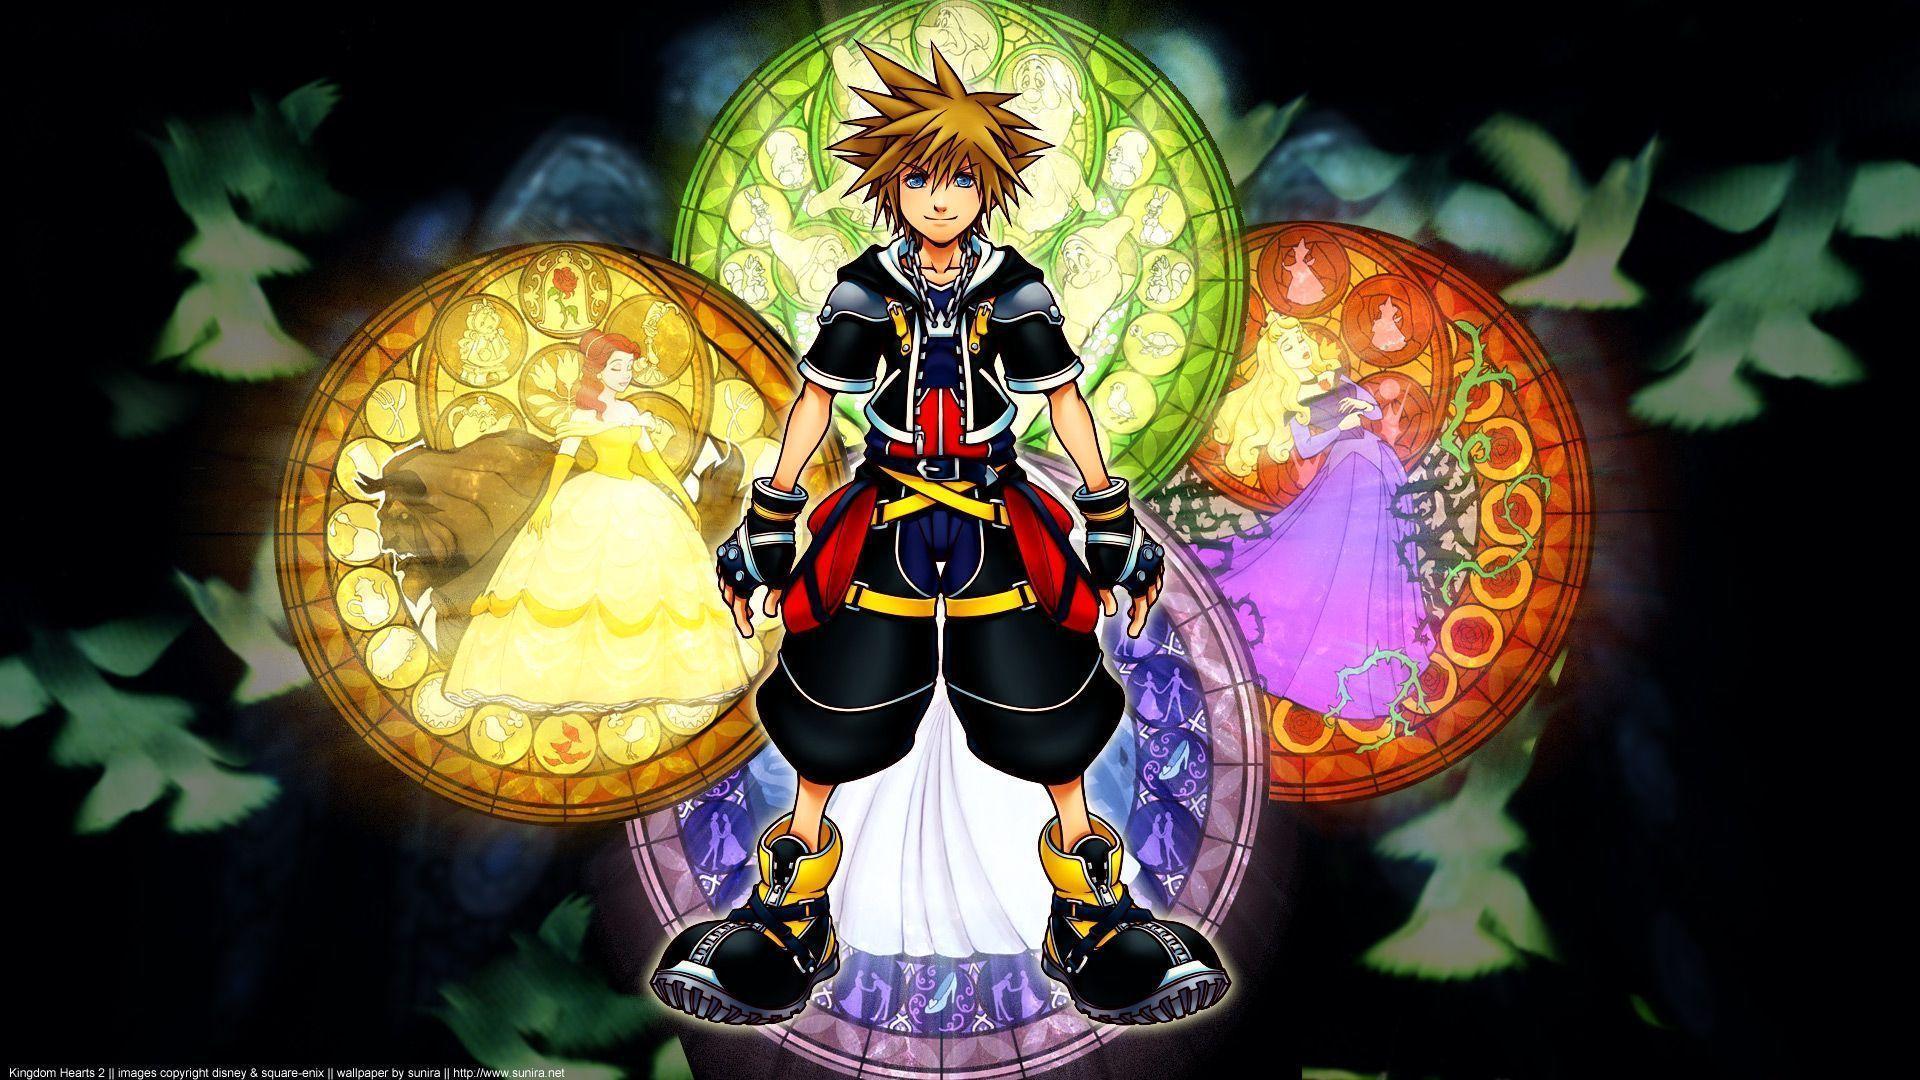 Kingdom Hearts Hd Wallpaper - Kingdom Hearts Hd Wallpaper Sora , HD Wallpaper & Backgrounds